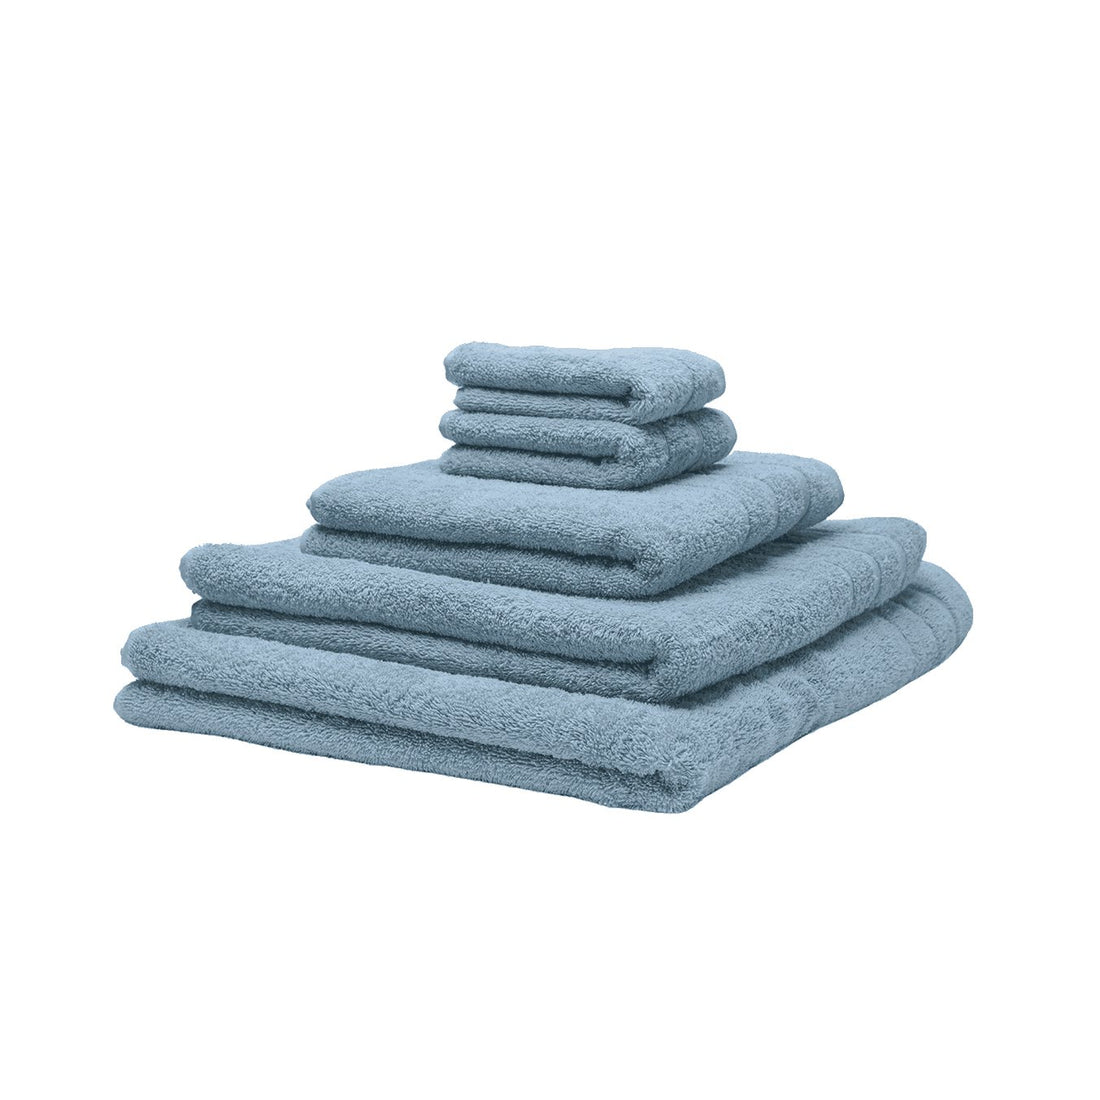 Fem økologiske håndklæder stablet oven på hinanden. Farven er blå. 